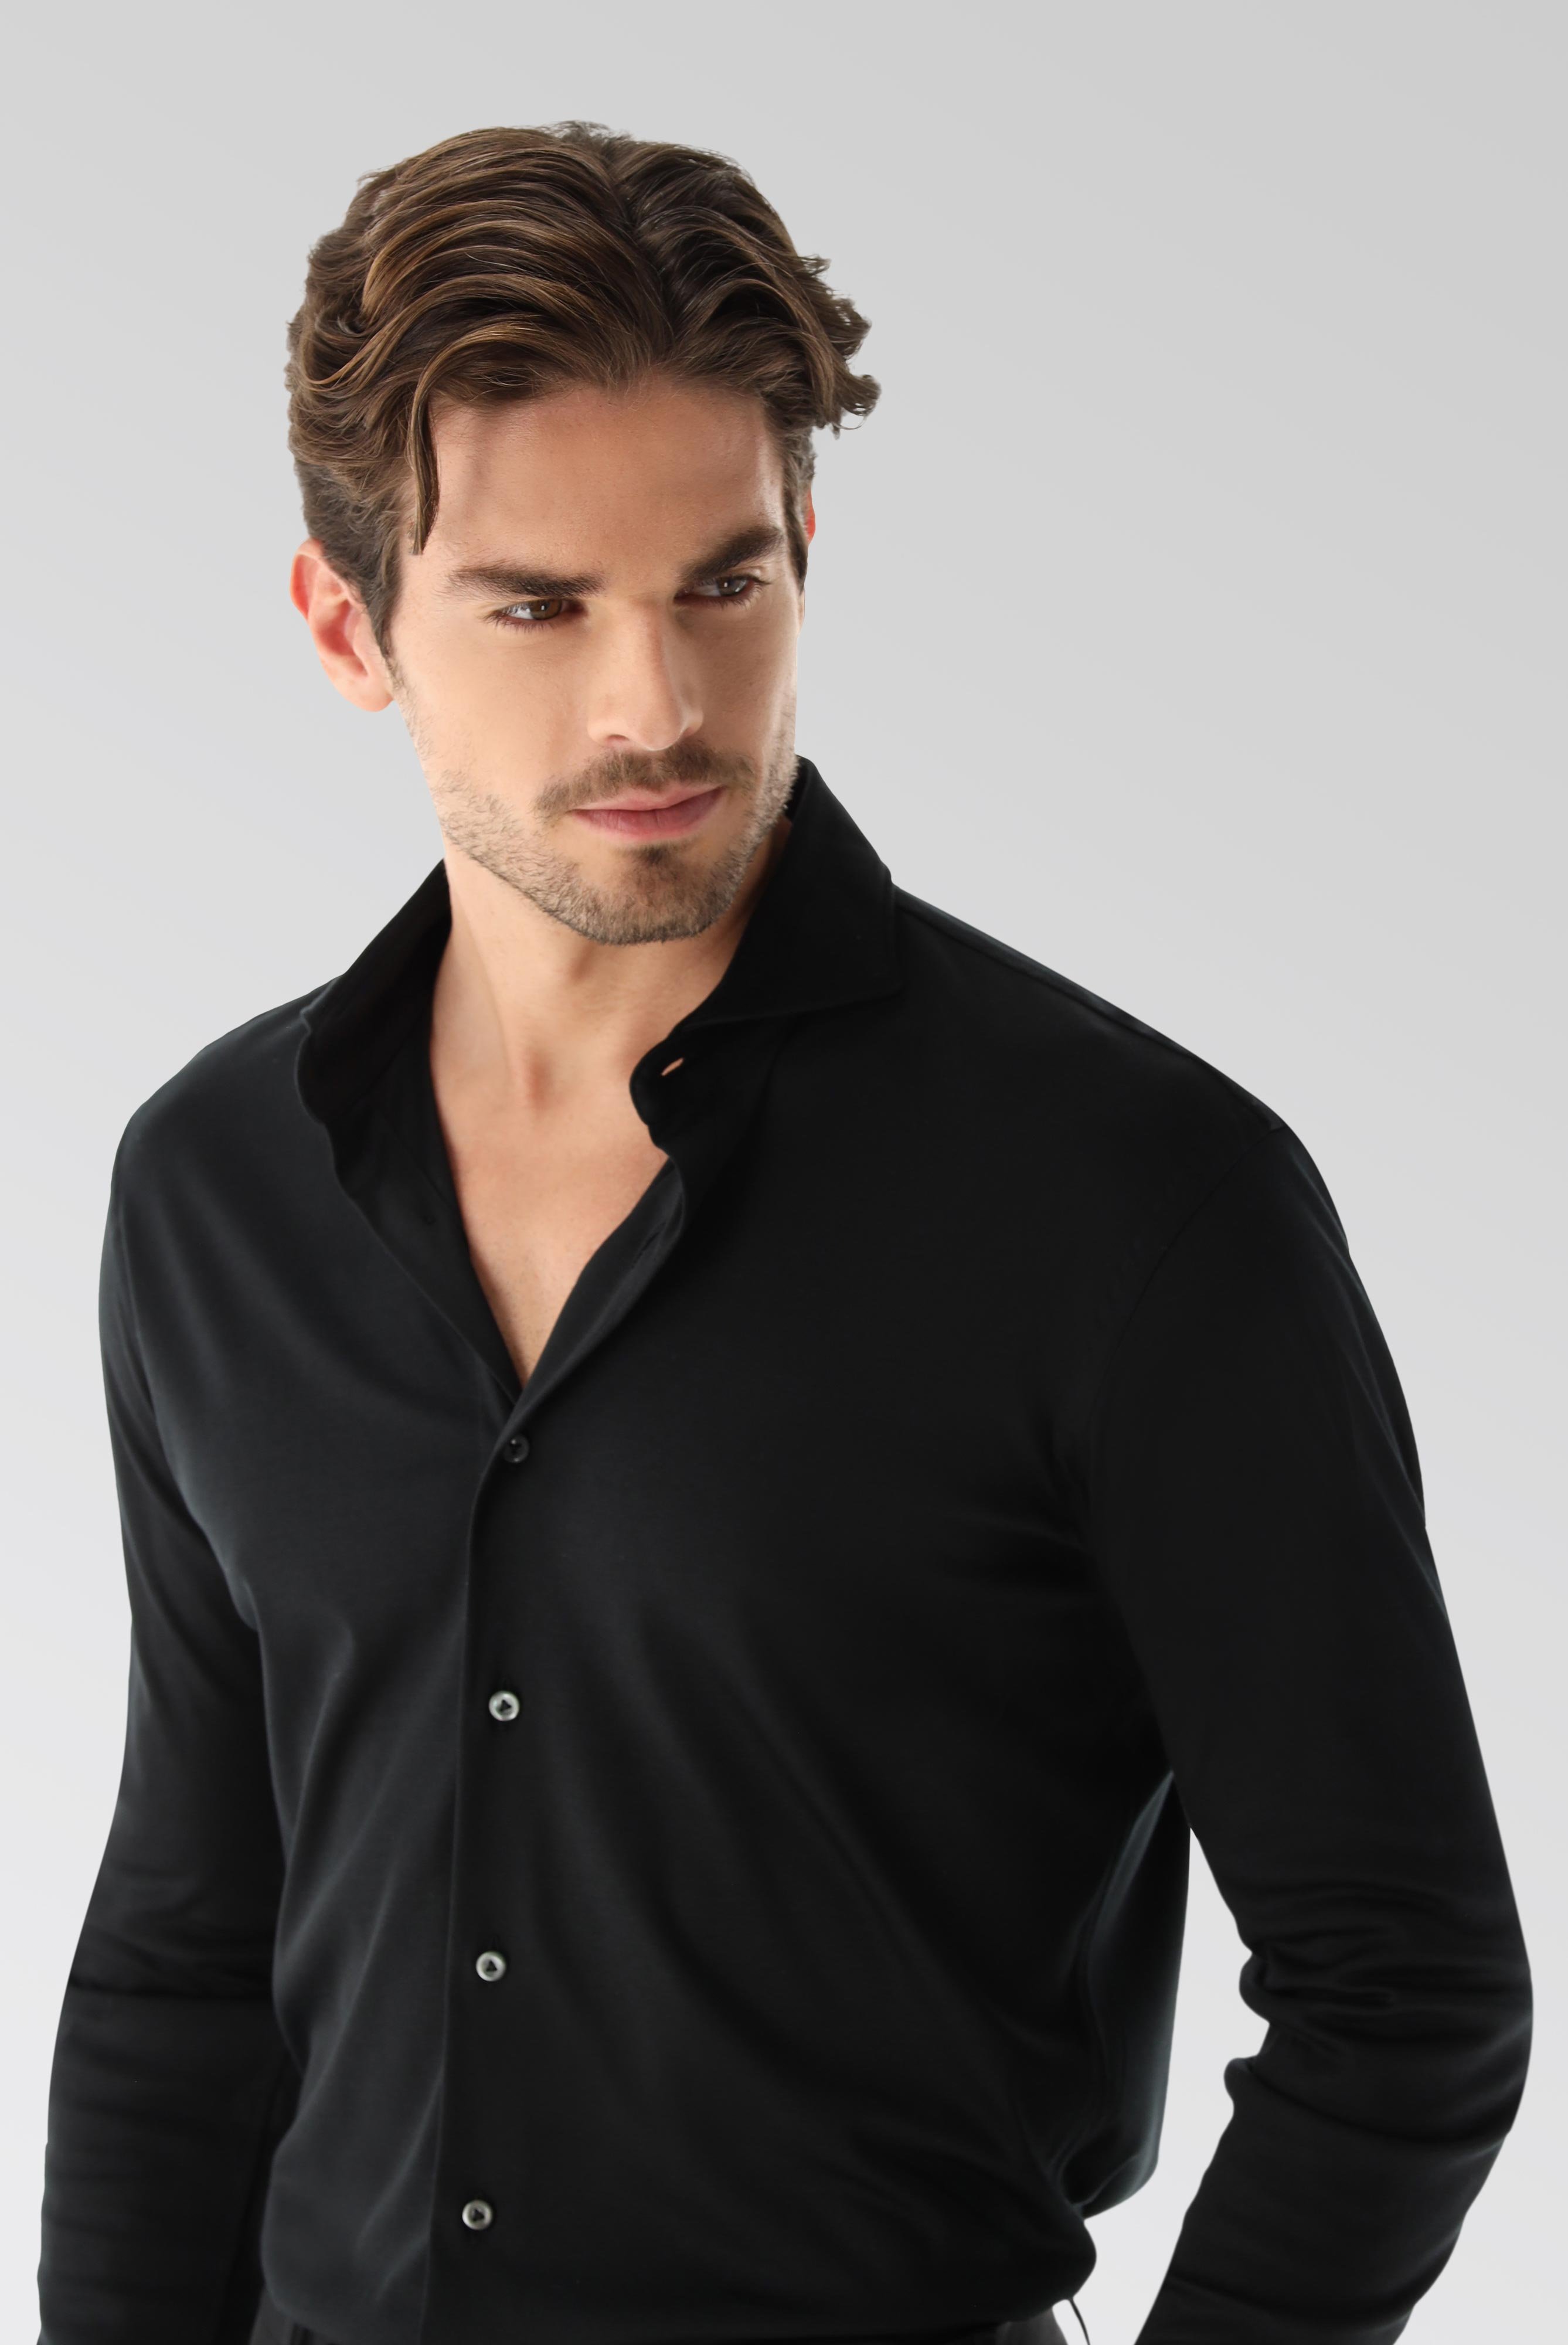 Bügelleichte Hemden+Jersey Hemd mit glänzender Optik Tailor Fit+20.1683.UC.180031.099.XXL